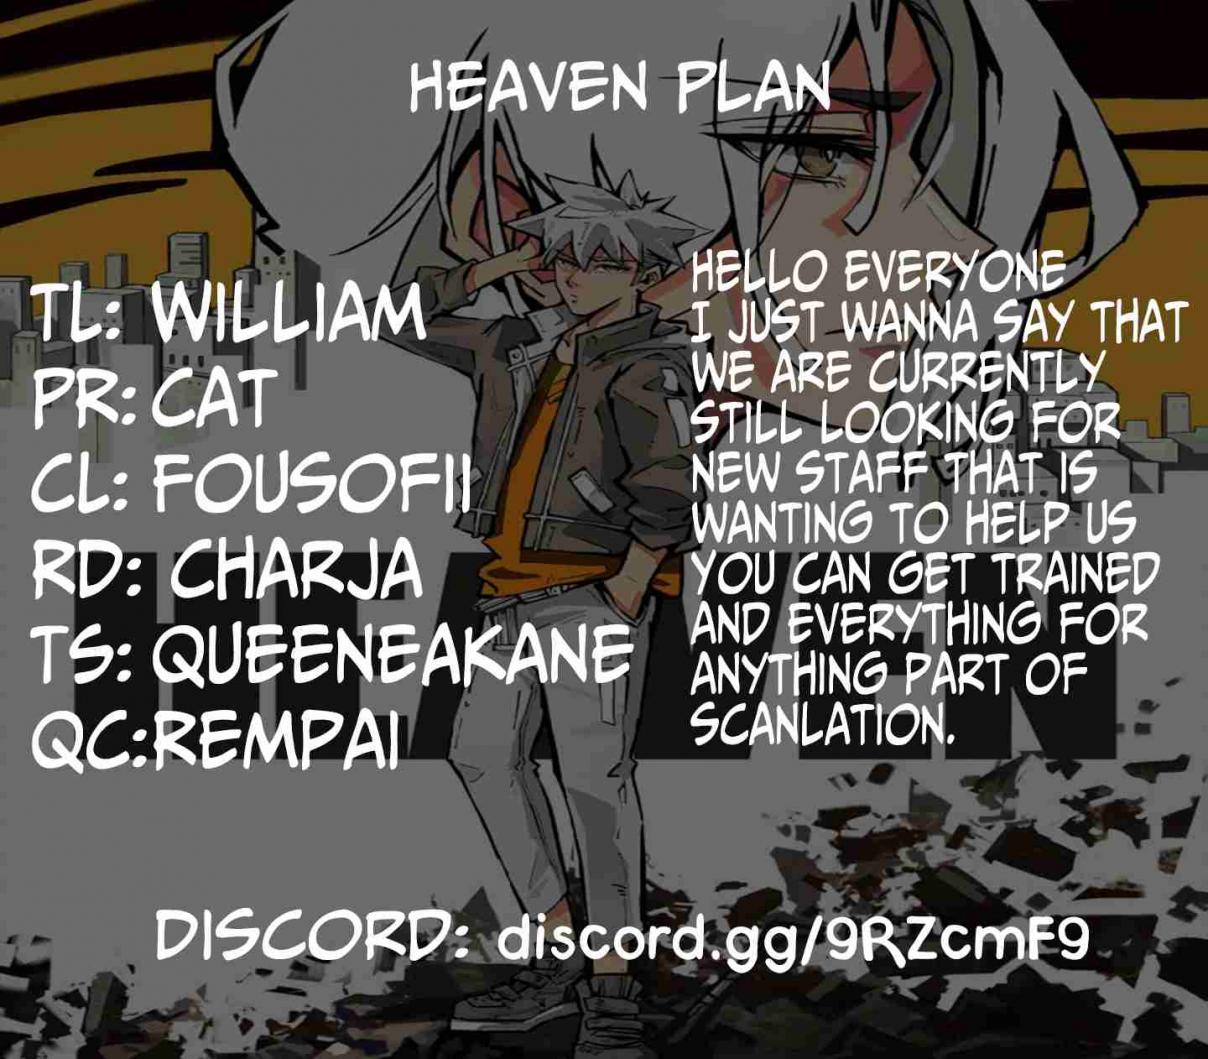 Heaven Plan Ch. 17 Zack The Gatekeeper